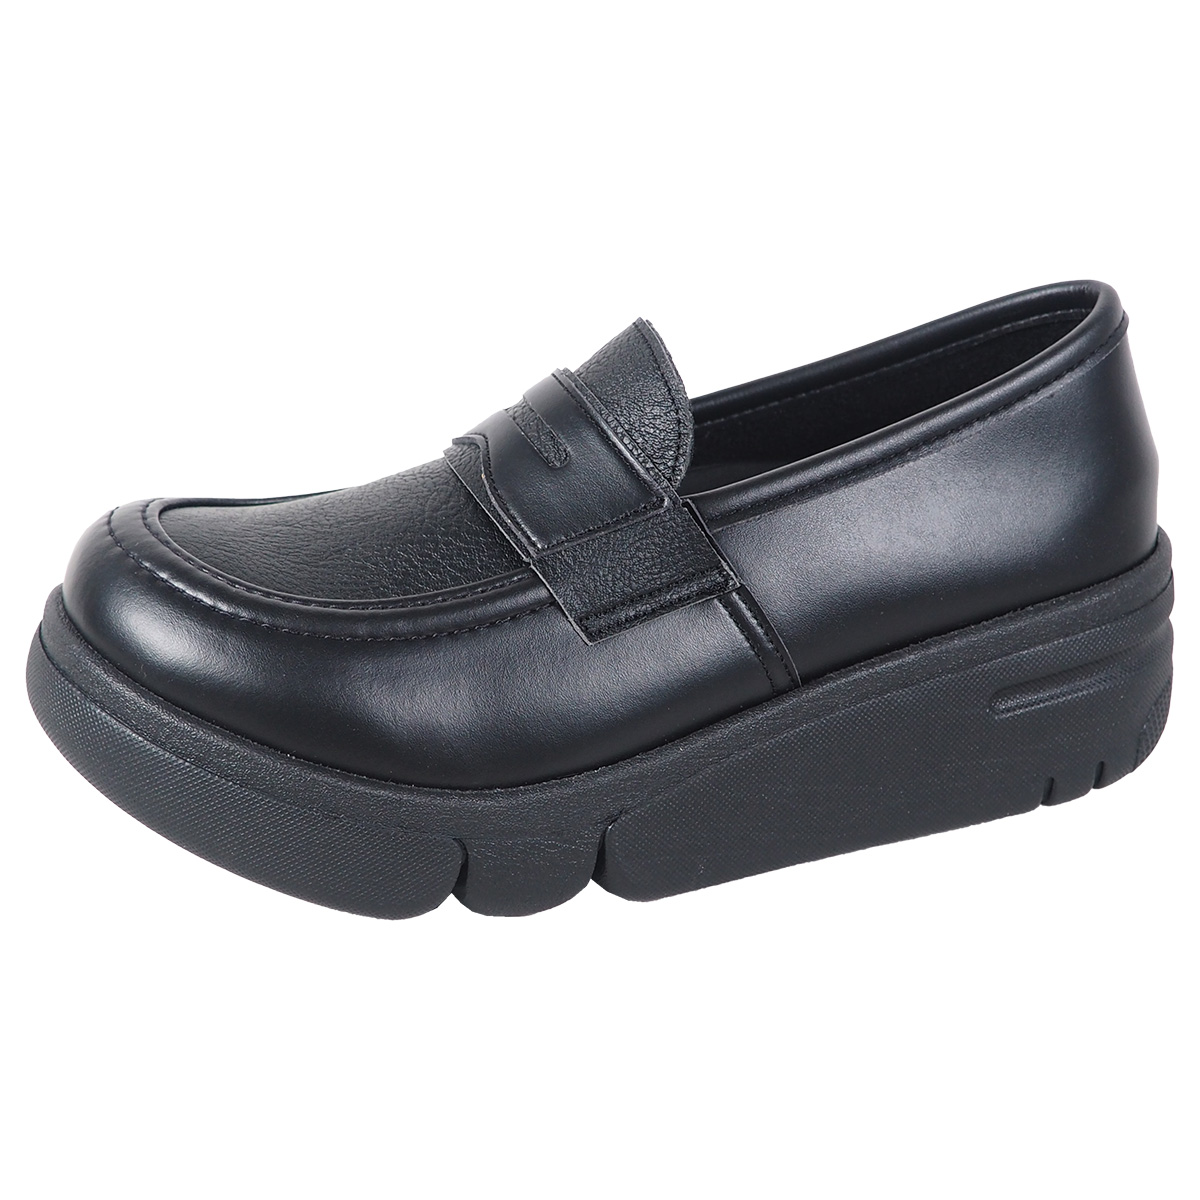 リゲッタ 靴 レディース パンプス コイン ローファー 歩きやすい 幅広靴 黒 厚底 疲れにくい 履...